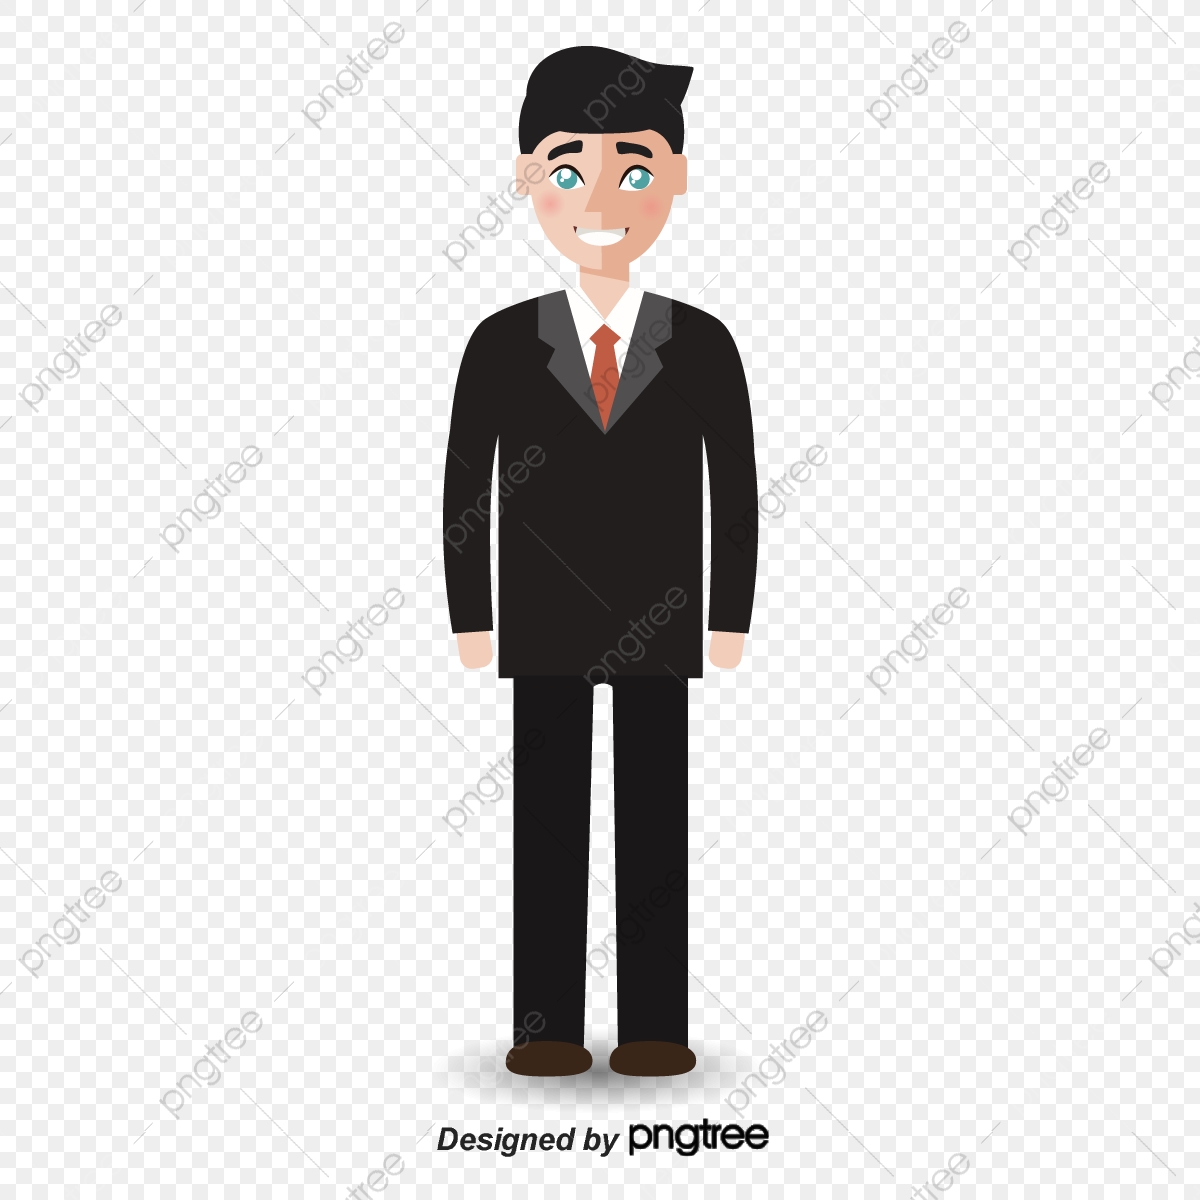 professional clipart business suit